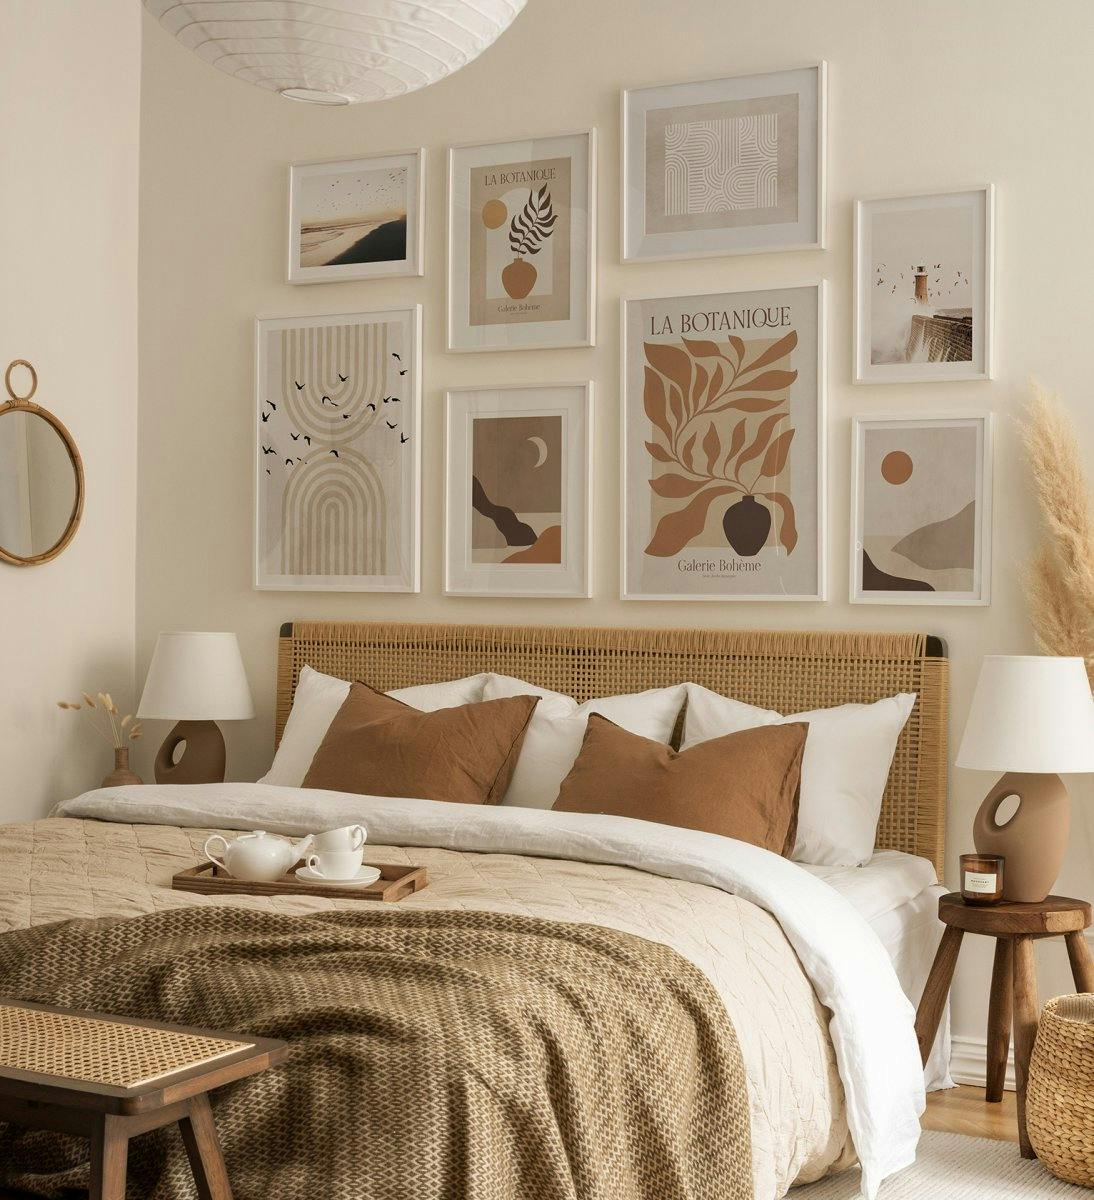 جدار معرض حديث باللون البيج والبني مع مطبوعات فنية مجردة مع إطارات خشبية بيضاء لغرفة النوم